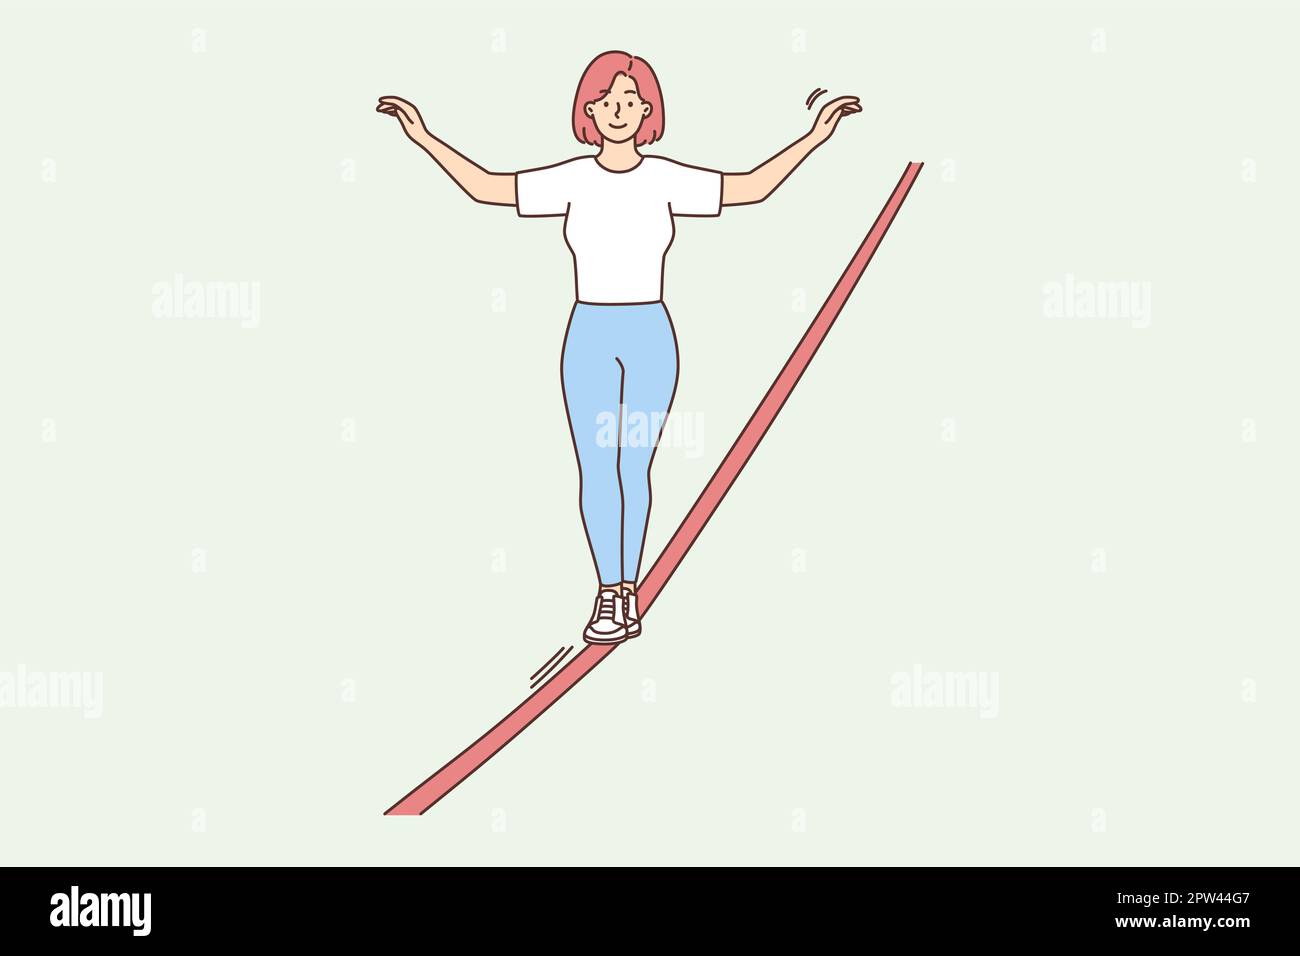 Femme marchant sur la corde raide Illustration de Vecteur